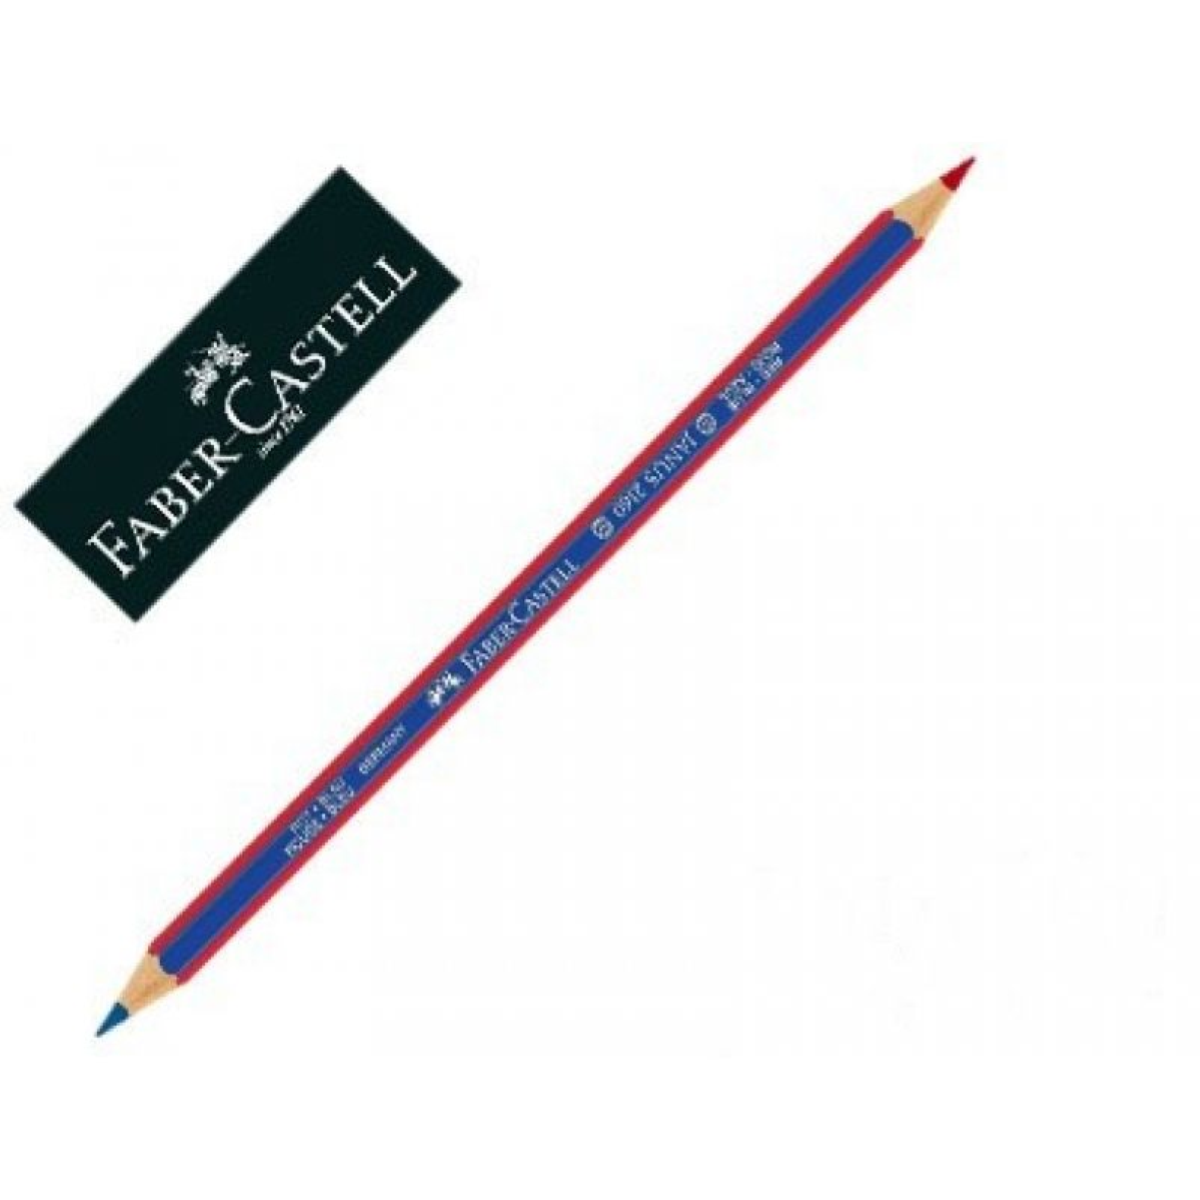 Sola matita CM17 bicolore rossa-blu con mina in grafite con aggiunta di  cera. Perfetta per